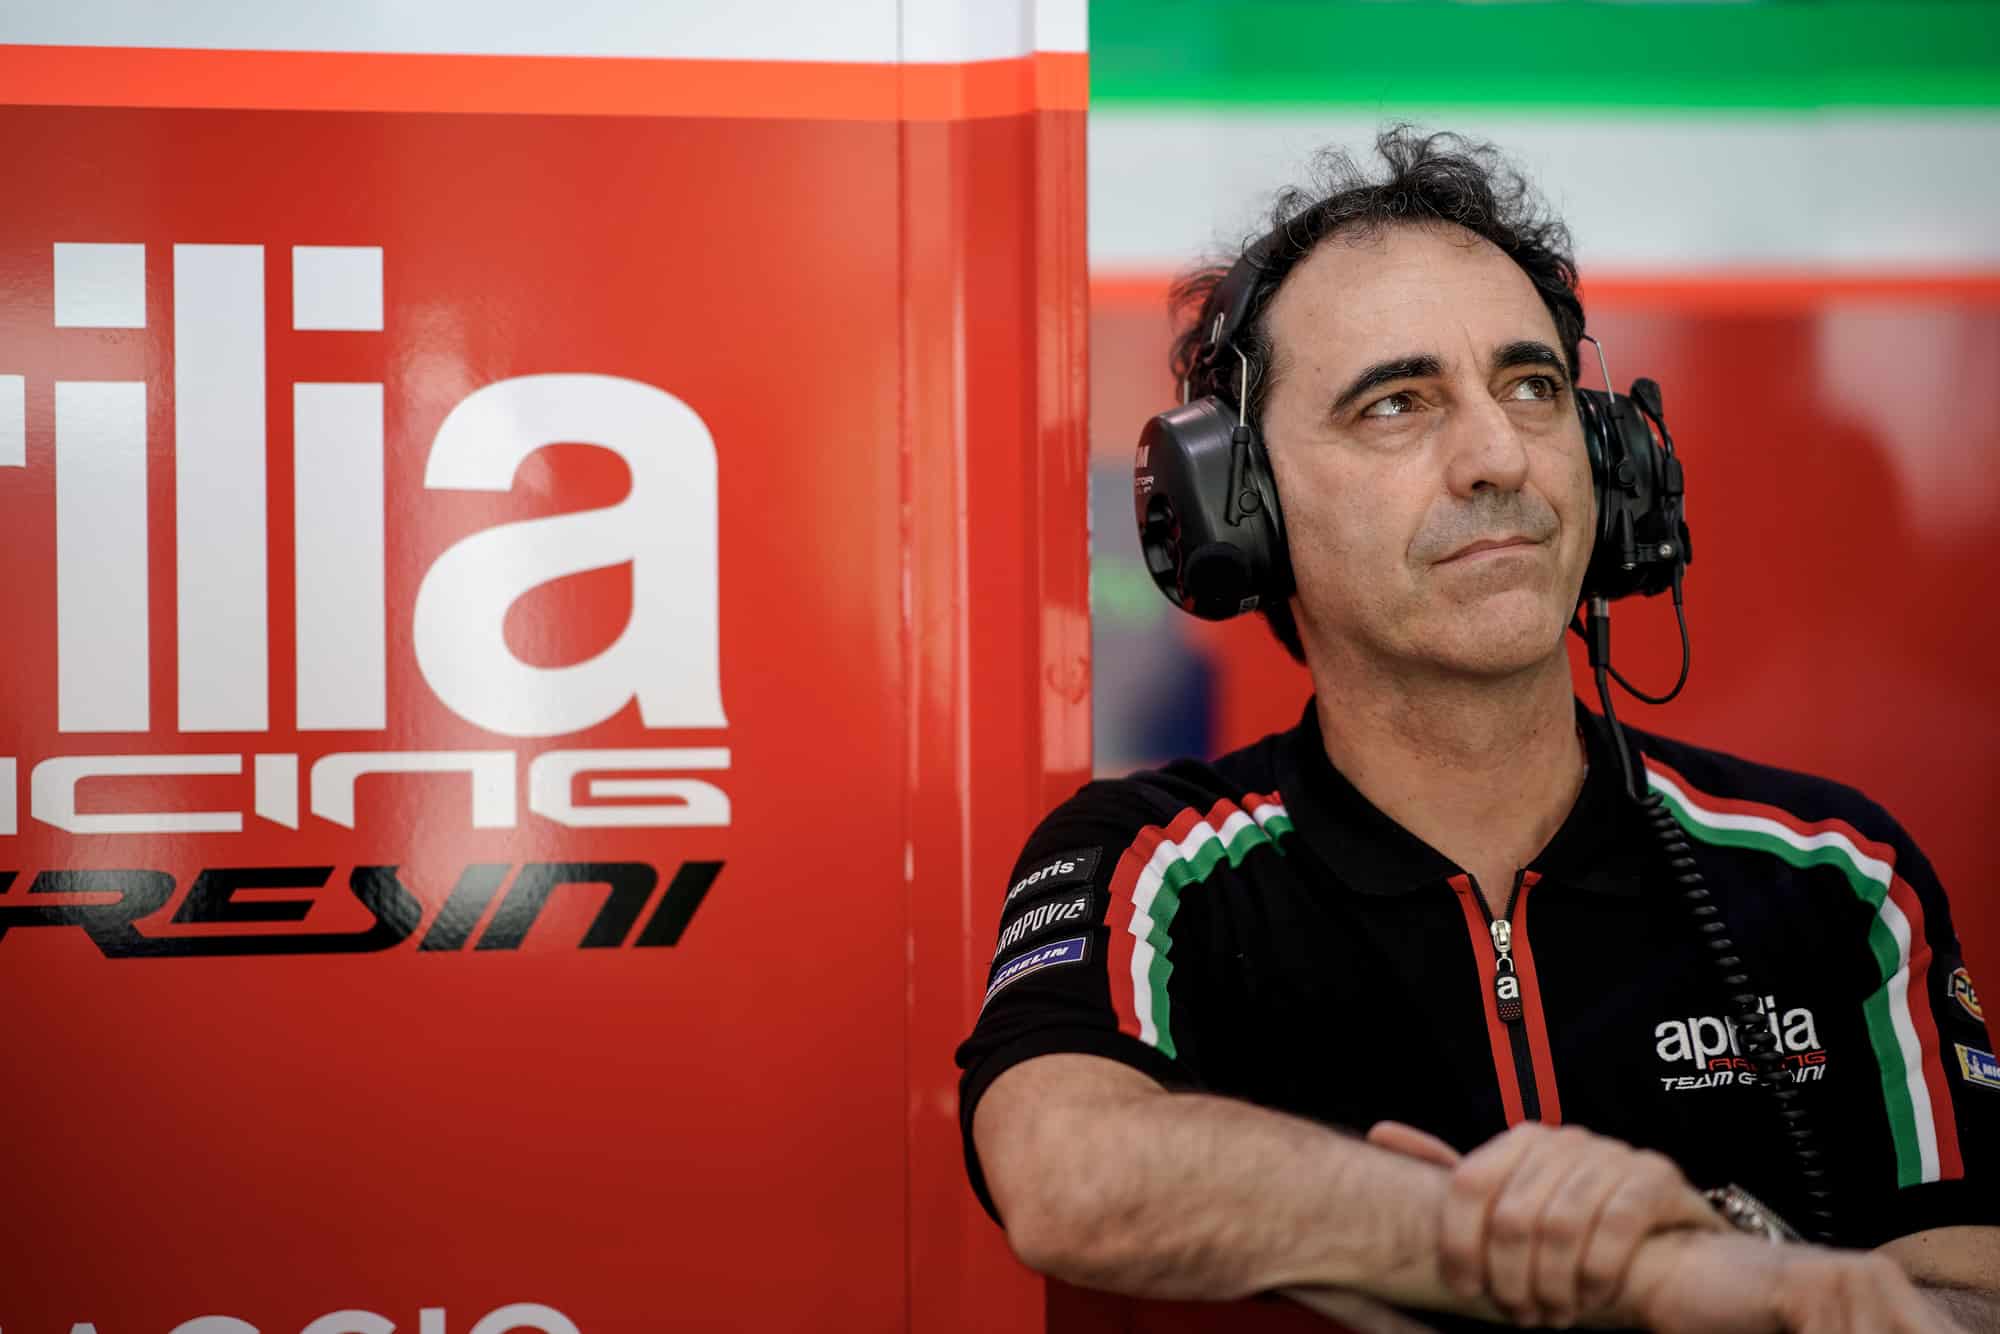 Romano Albesiano in the Aprilia MotoGP pit garage